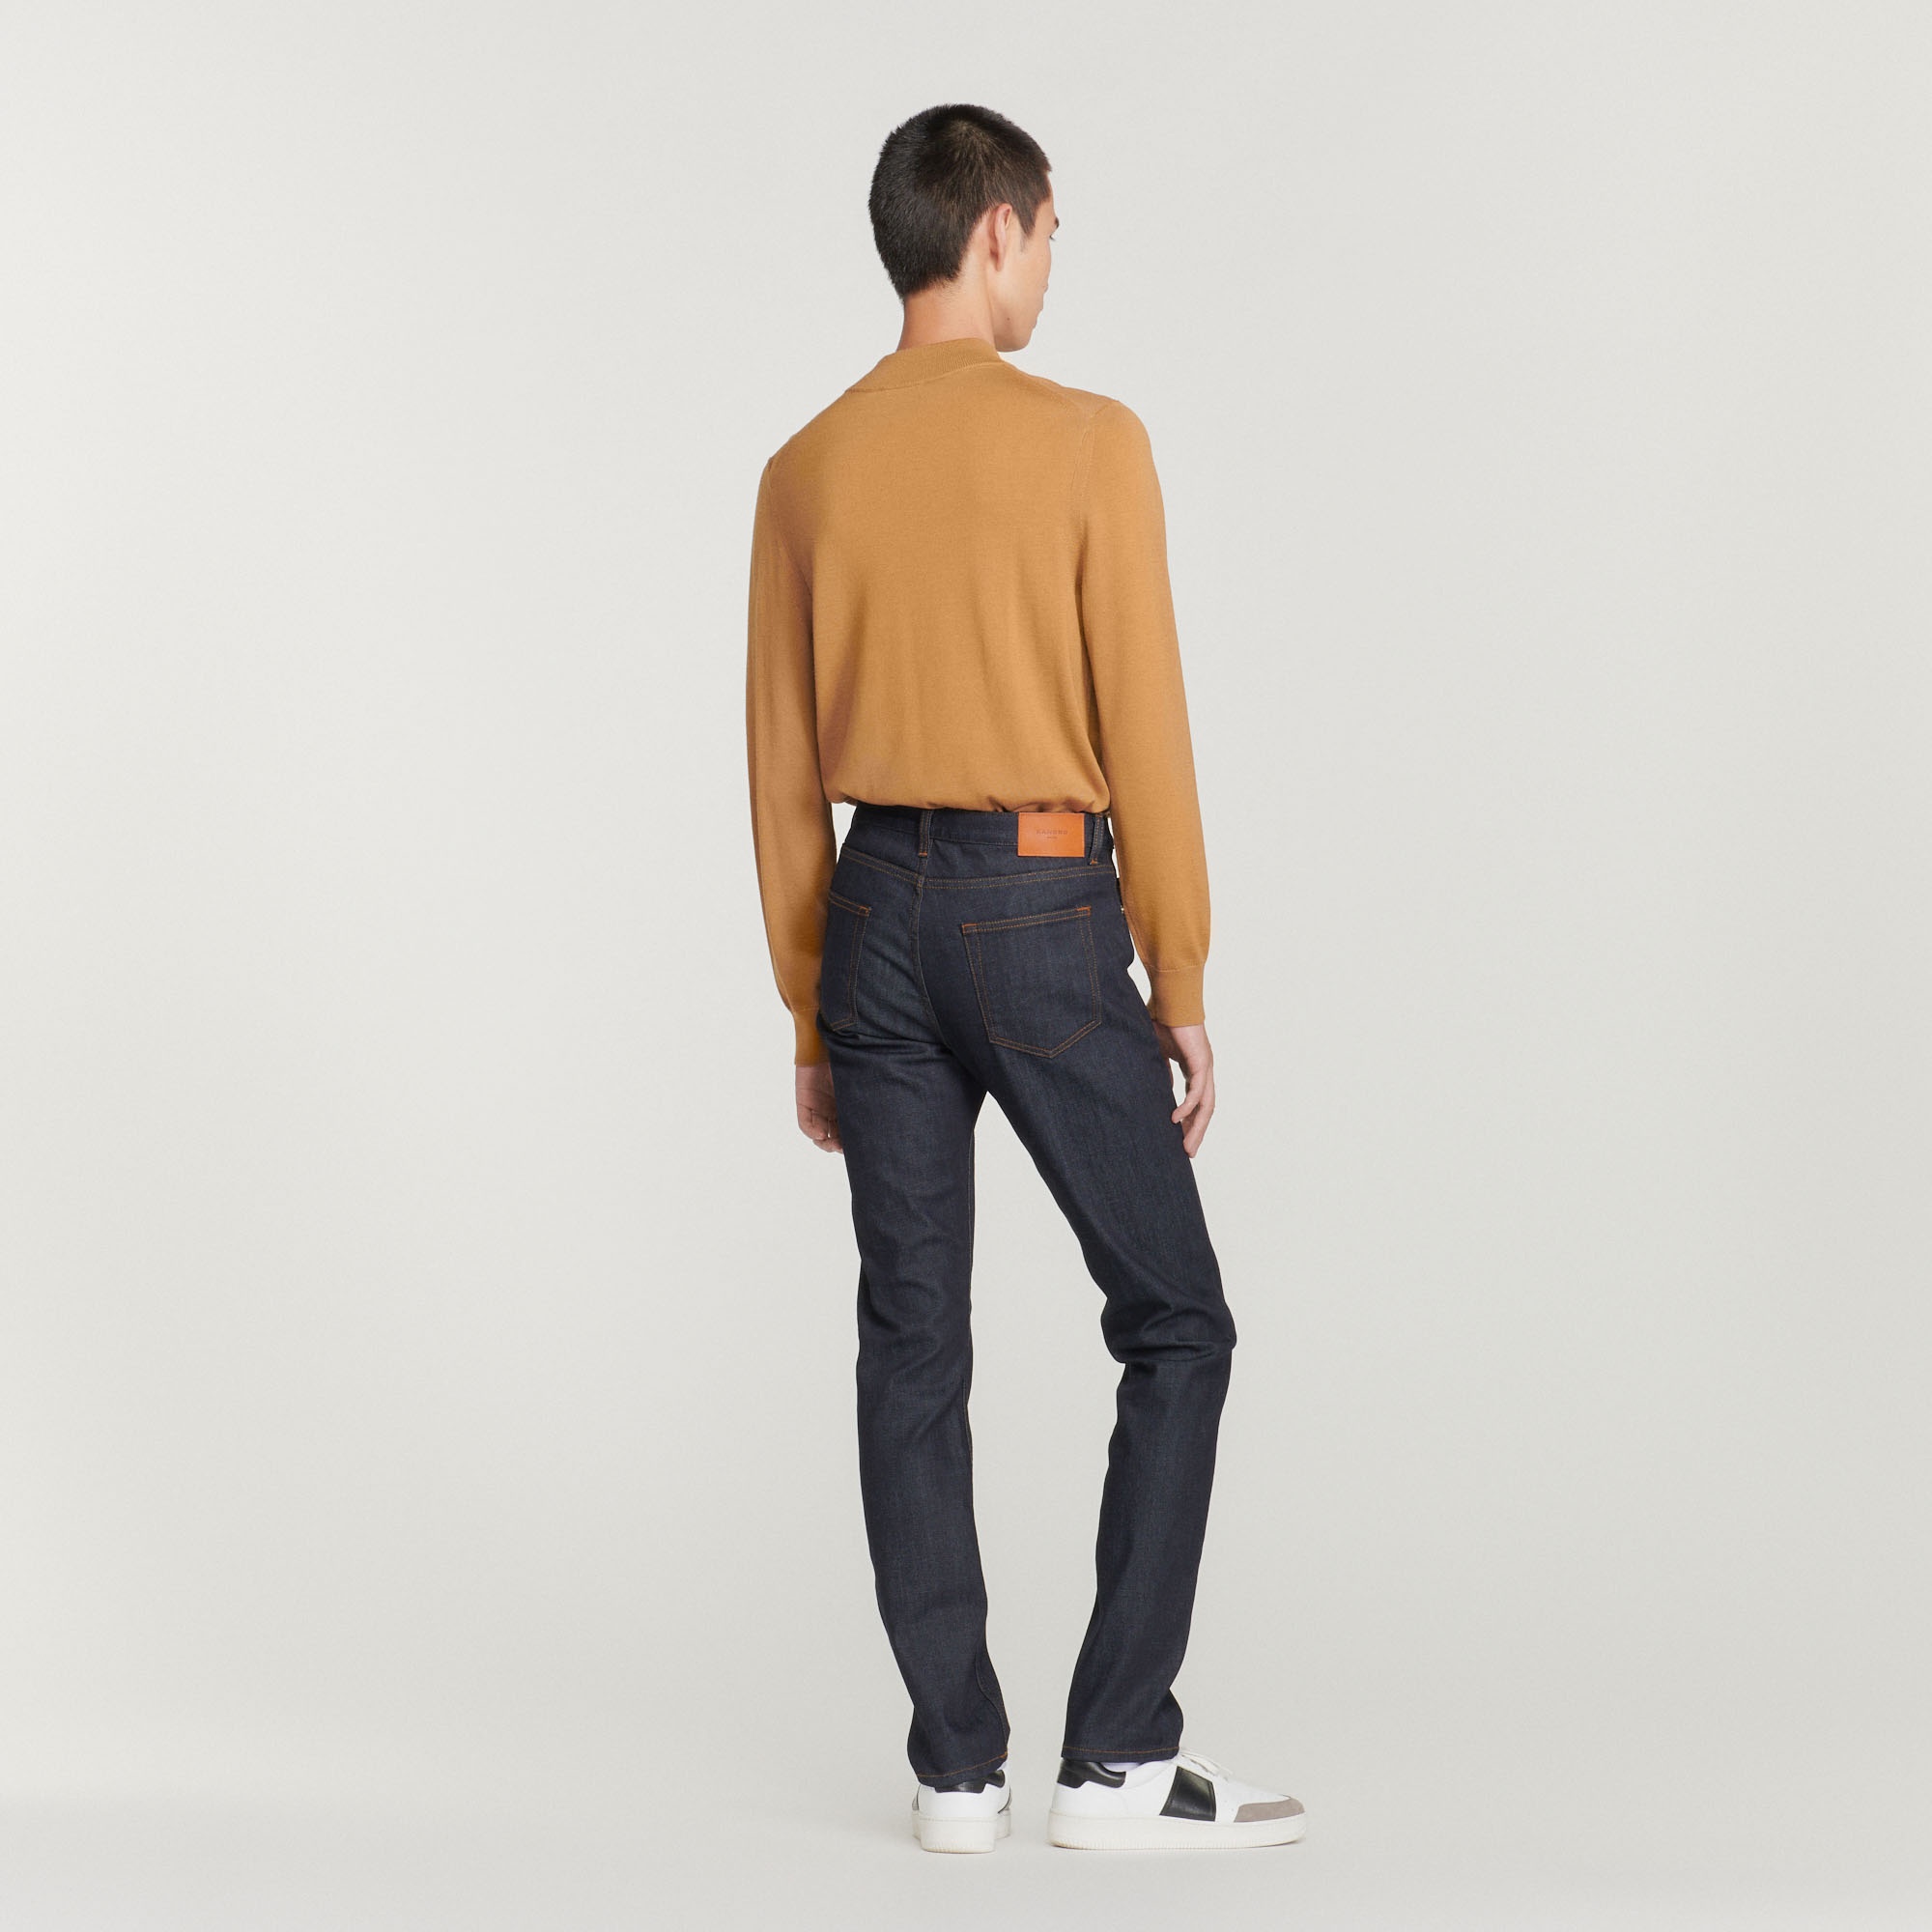 Raw jeans - Narrow cut - 6